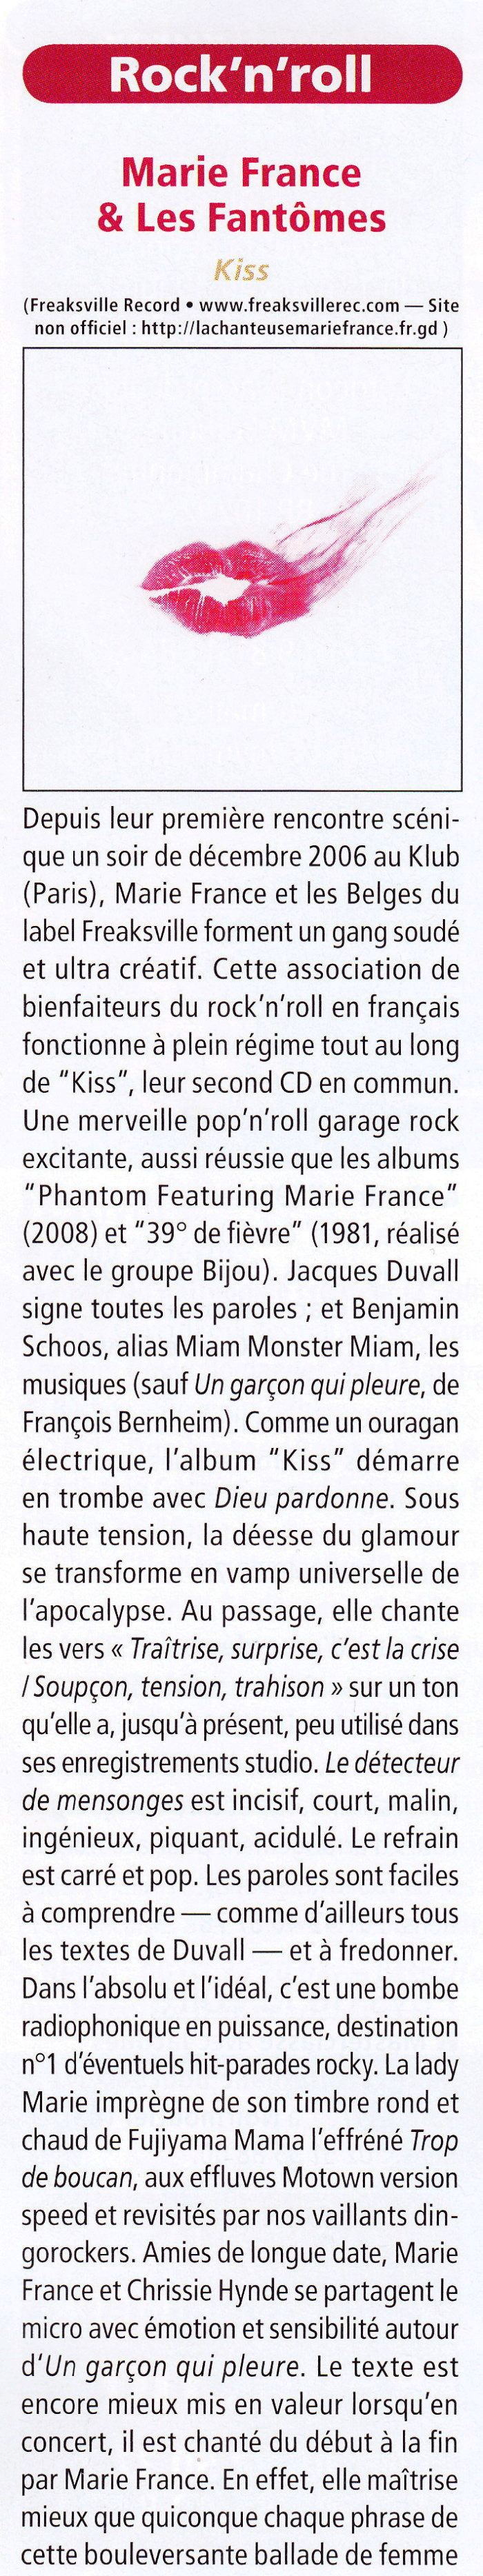 Longue chronique détaillée de l'album "KISS" de MARIE FRANCE & LES FANTÔMES  dans “ACCORDÉON  & ACCORDÉONISTES” n°116 (février 2012) 1201250908461423619347295